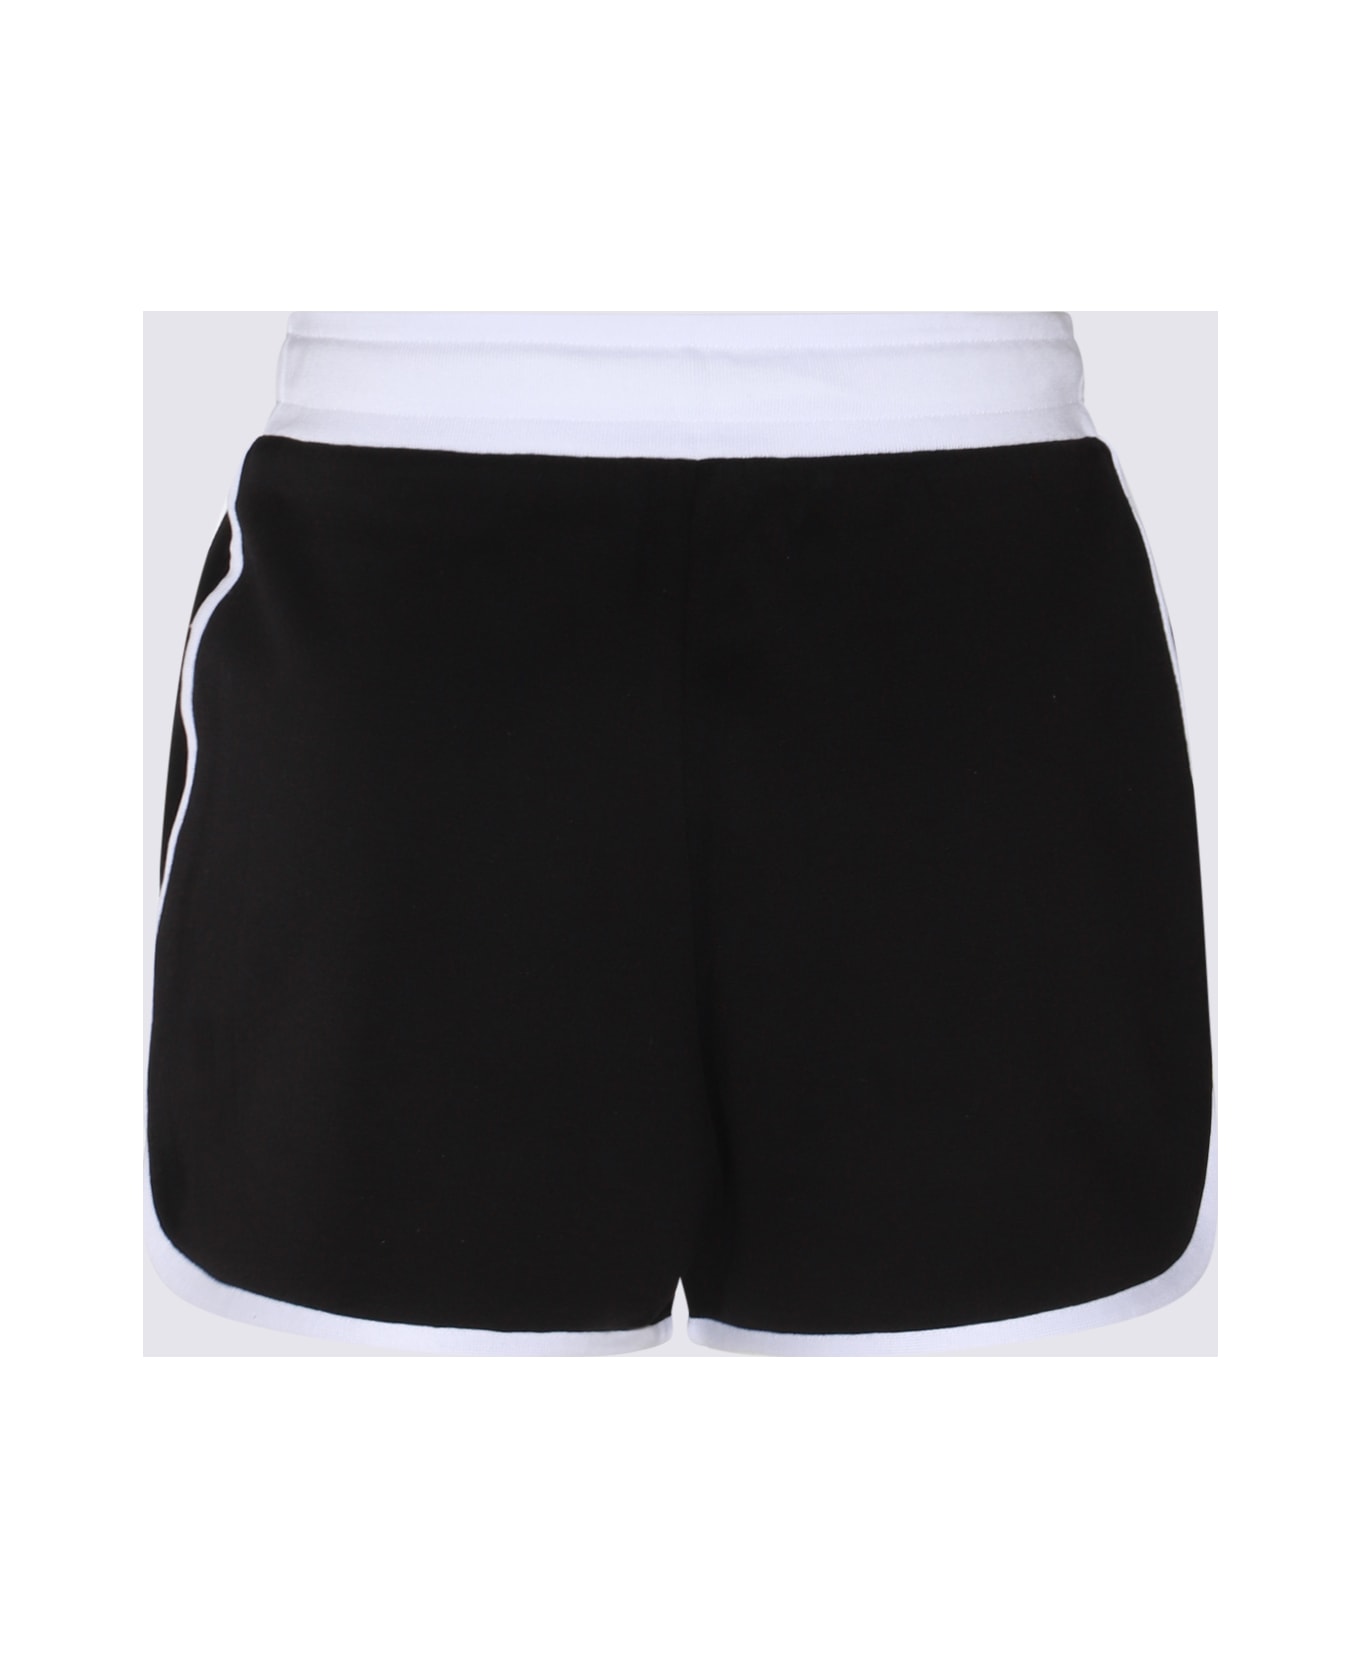 Dolce & Gabbana Black And White Cotton Blend Track Shorts - Nero/bianco ショートパンツ